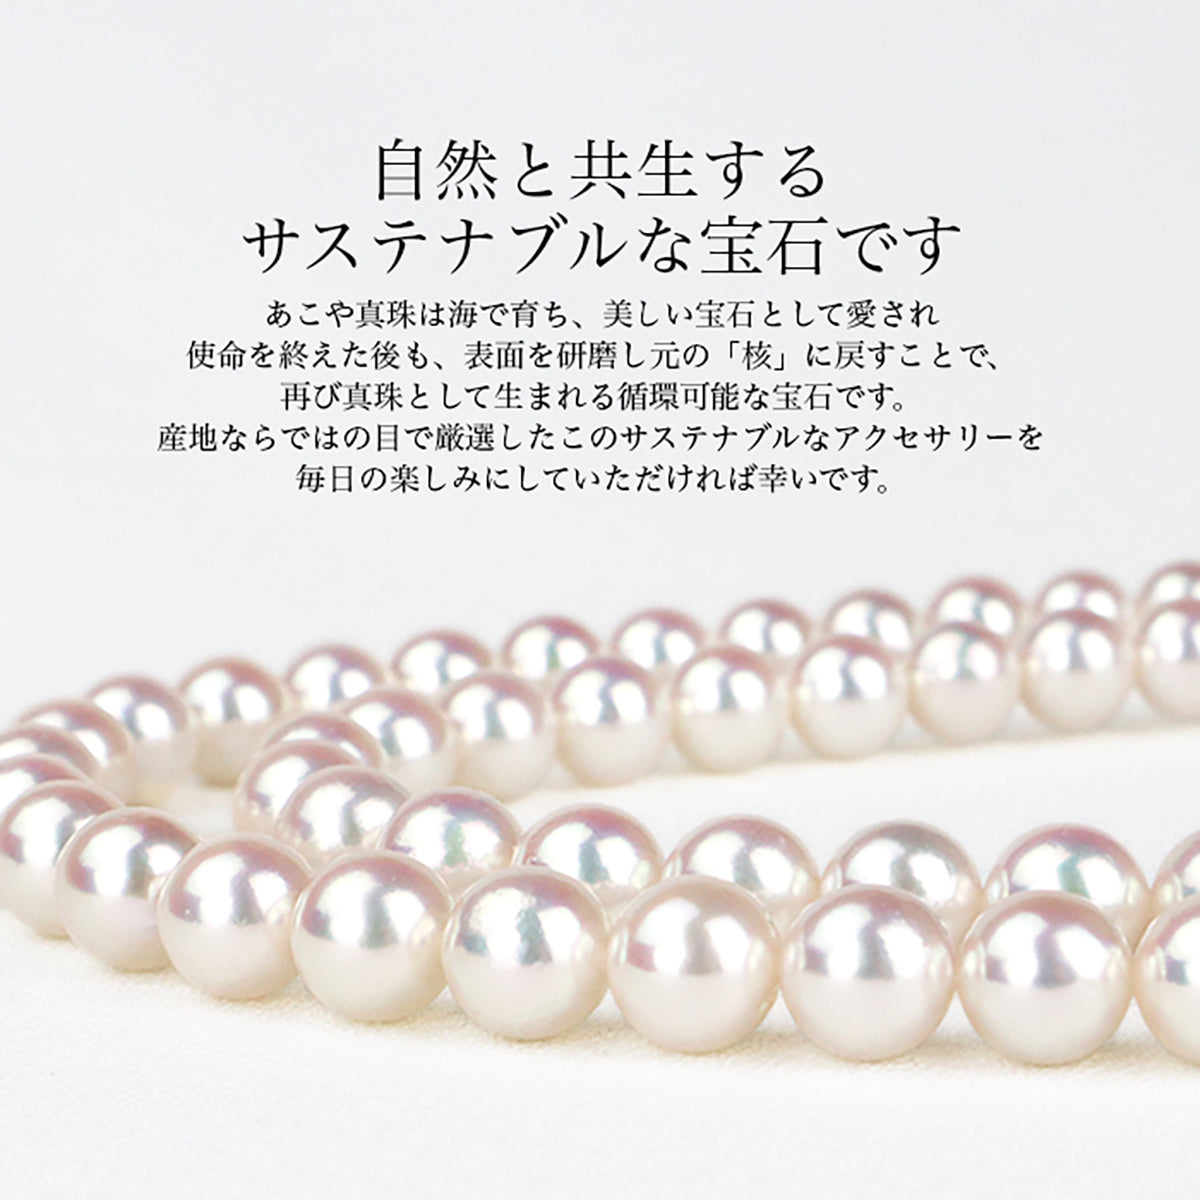 一点珍珠手链带圆形透明强化橡胶白色 6.5-7.0 毫米 Akoya 珍珠 (4054)